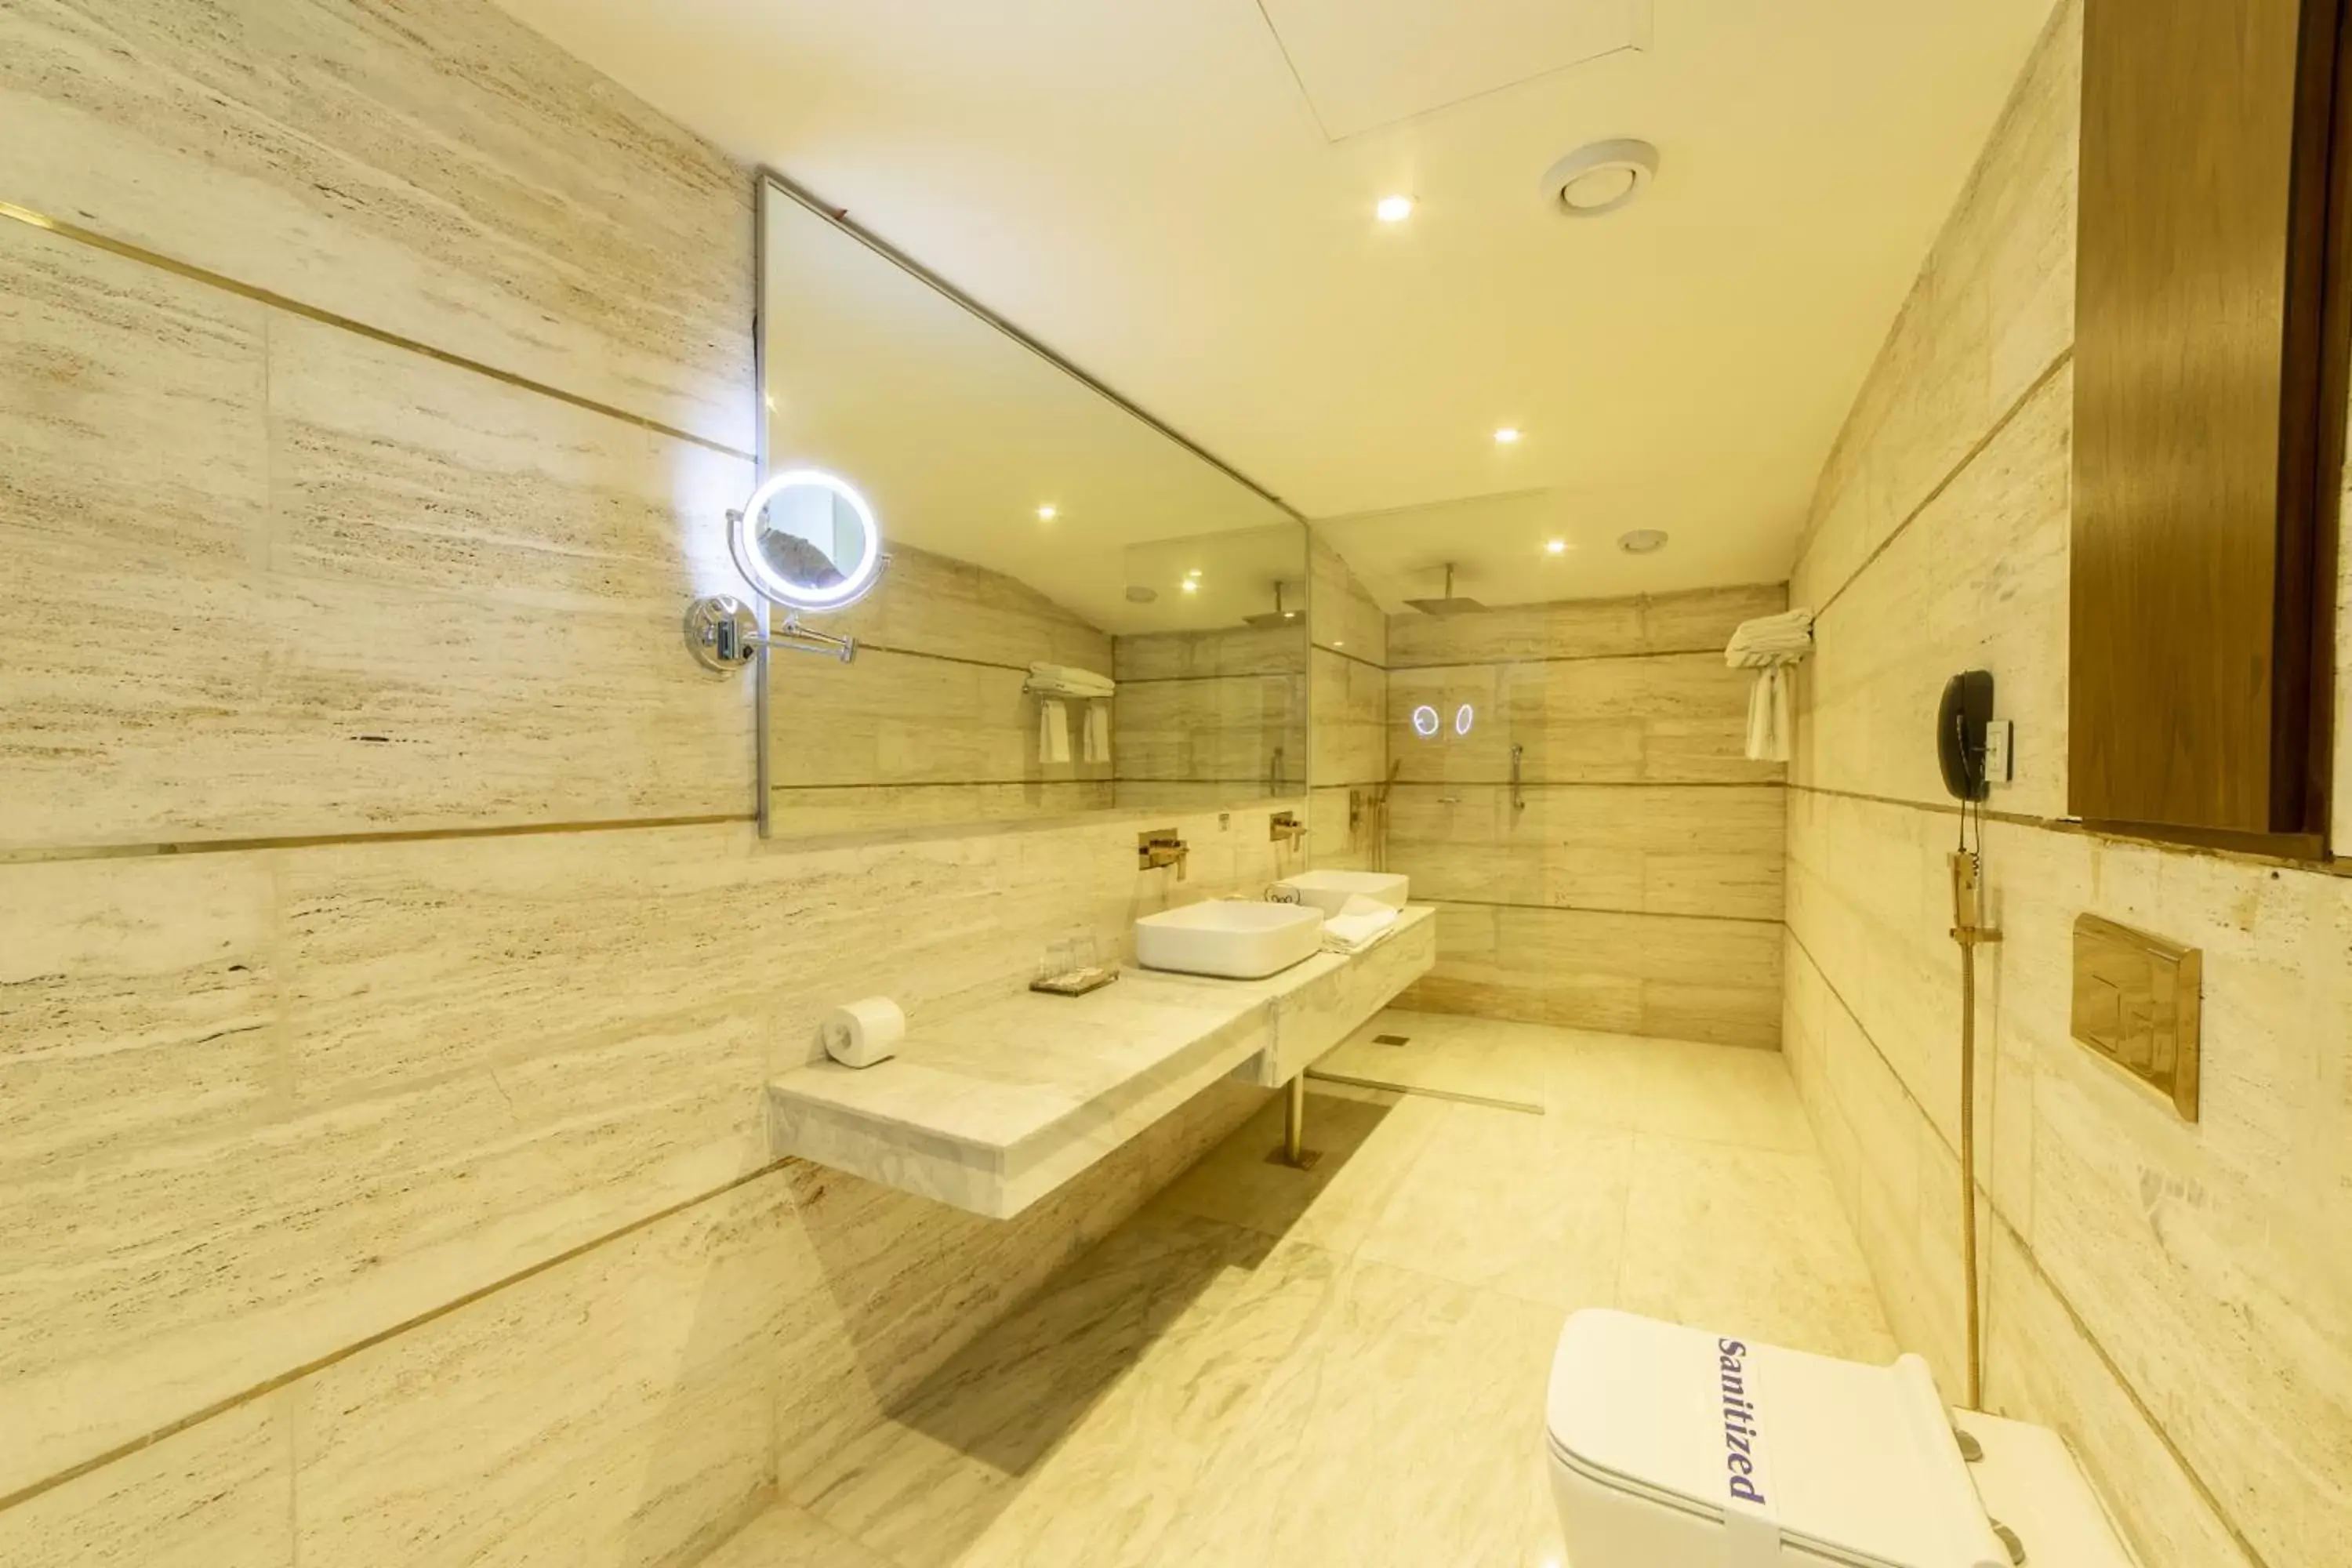 Bathroom in Best Western Premier Islamabad